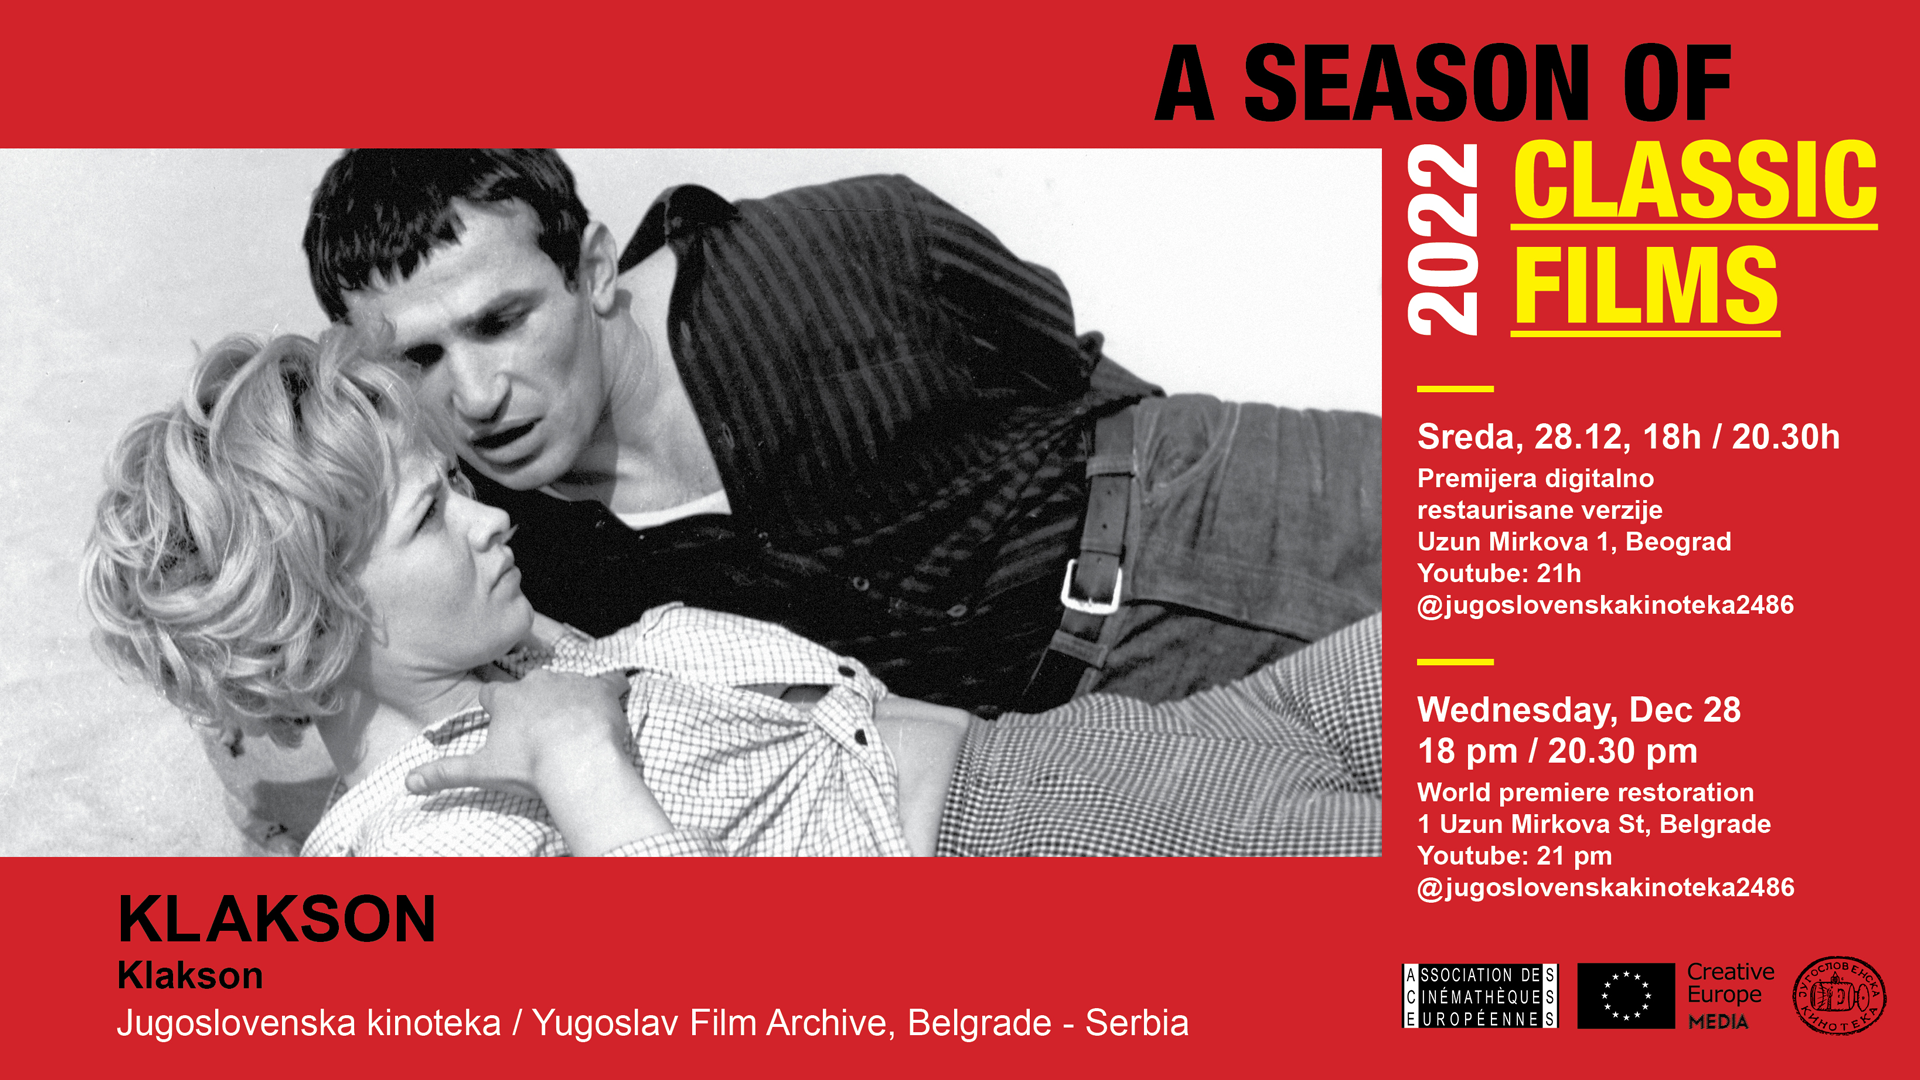 Jugoslovenska kinoteka: Besplatne projekcije filma „Klakson“ u Sezoni filmskih klasika